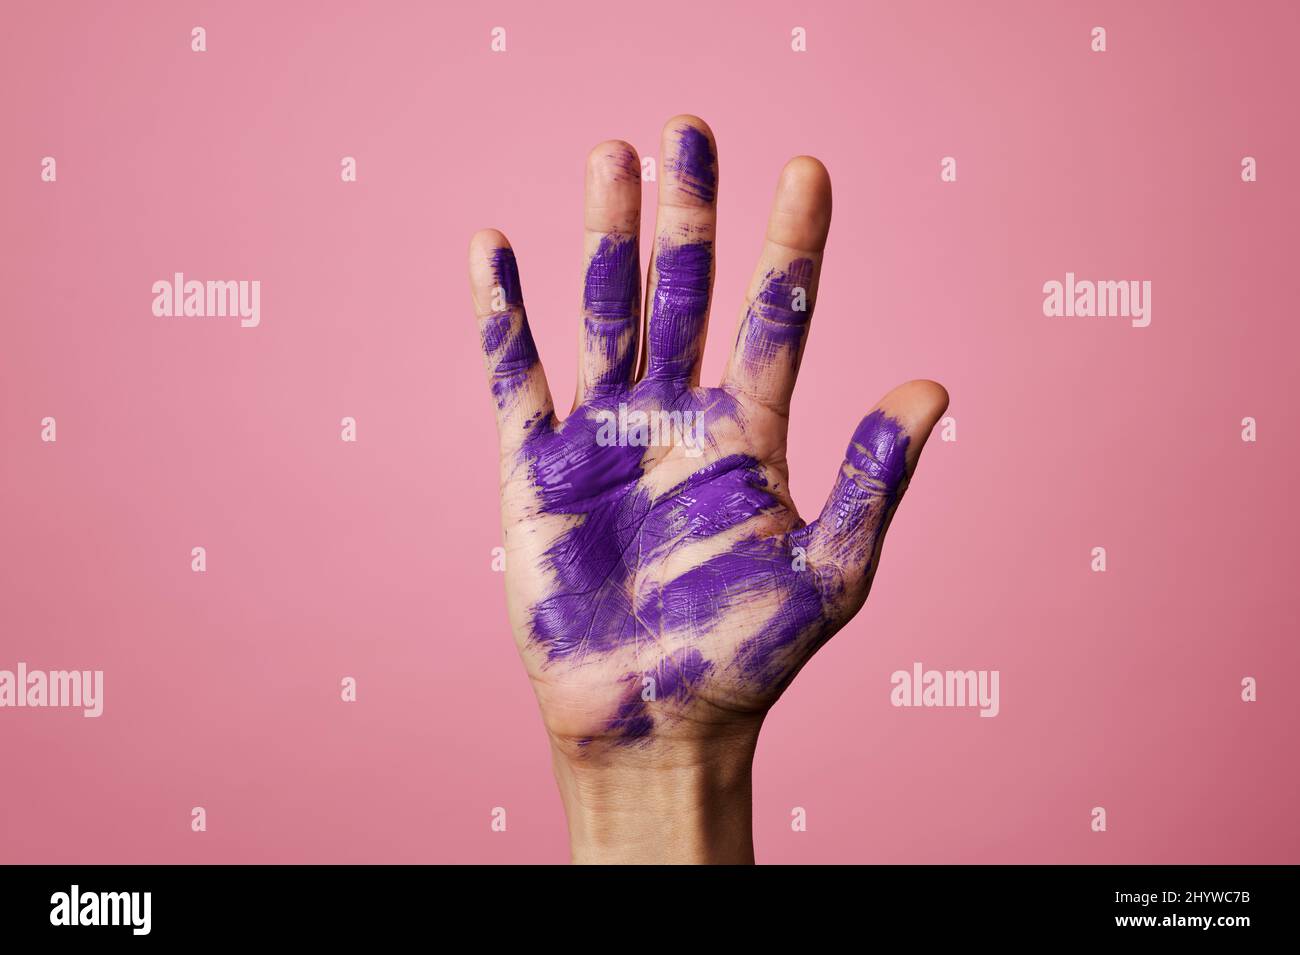 Nahaufnahme der erhobenen Hand eines Mannes mit einigen Flecken lila Farbe, auf einem rosa Hintergrund Stockfoto